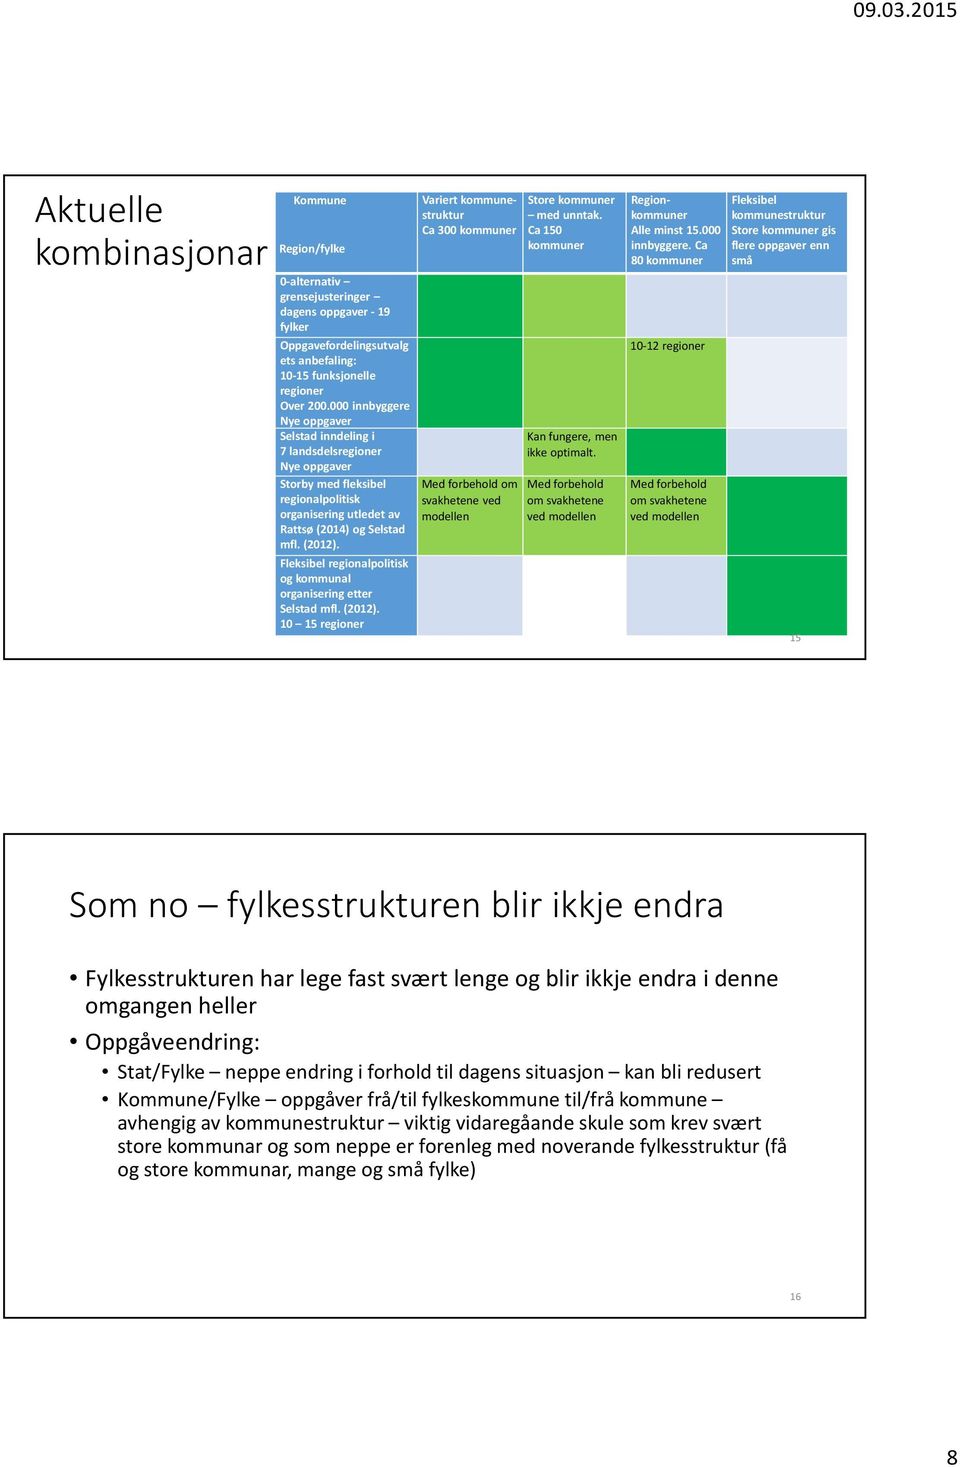 Fleksibel regionalpolitisk og kommunal organisering etter Selstad mfl. (2012).